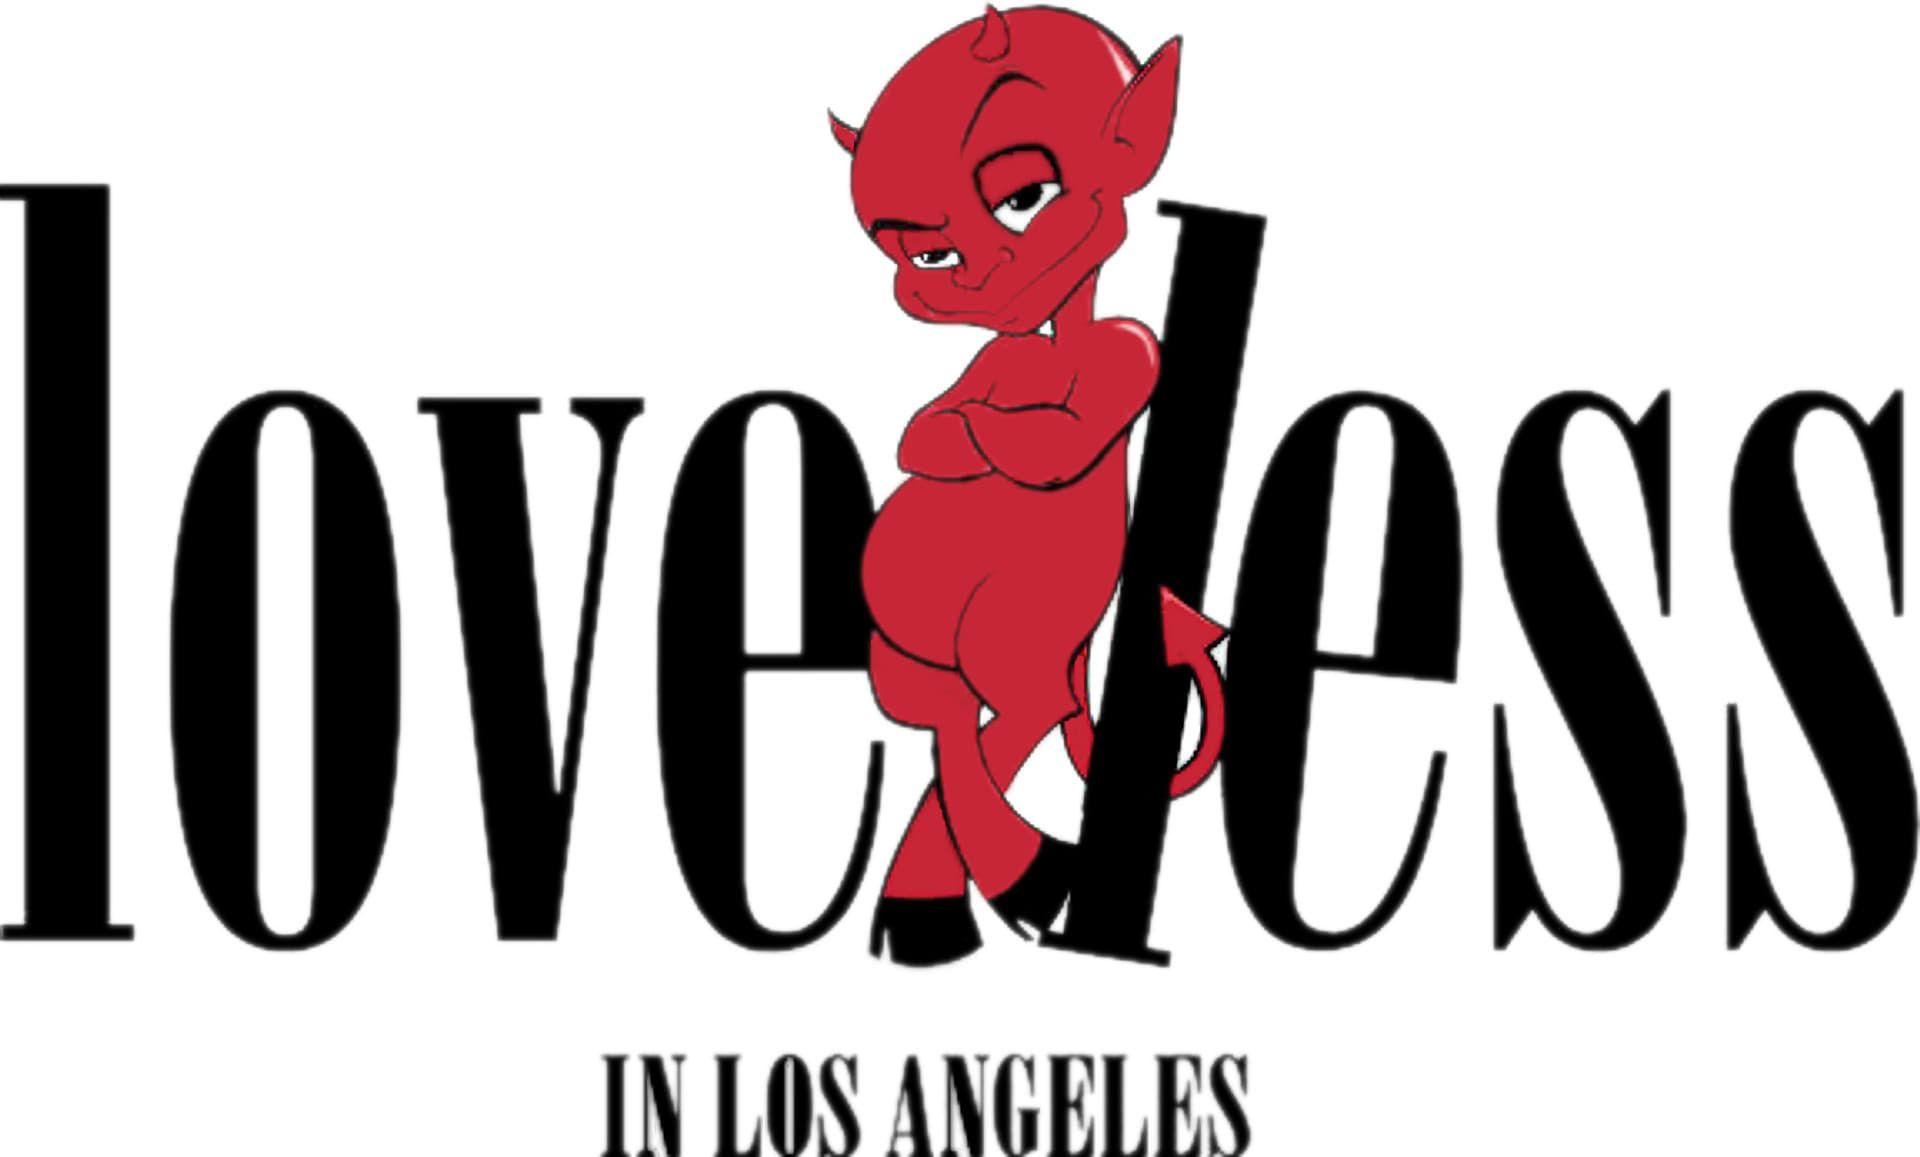 Cubierta de Loveless in Los Angeles